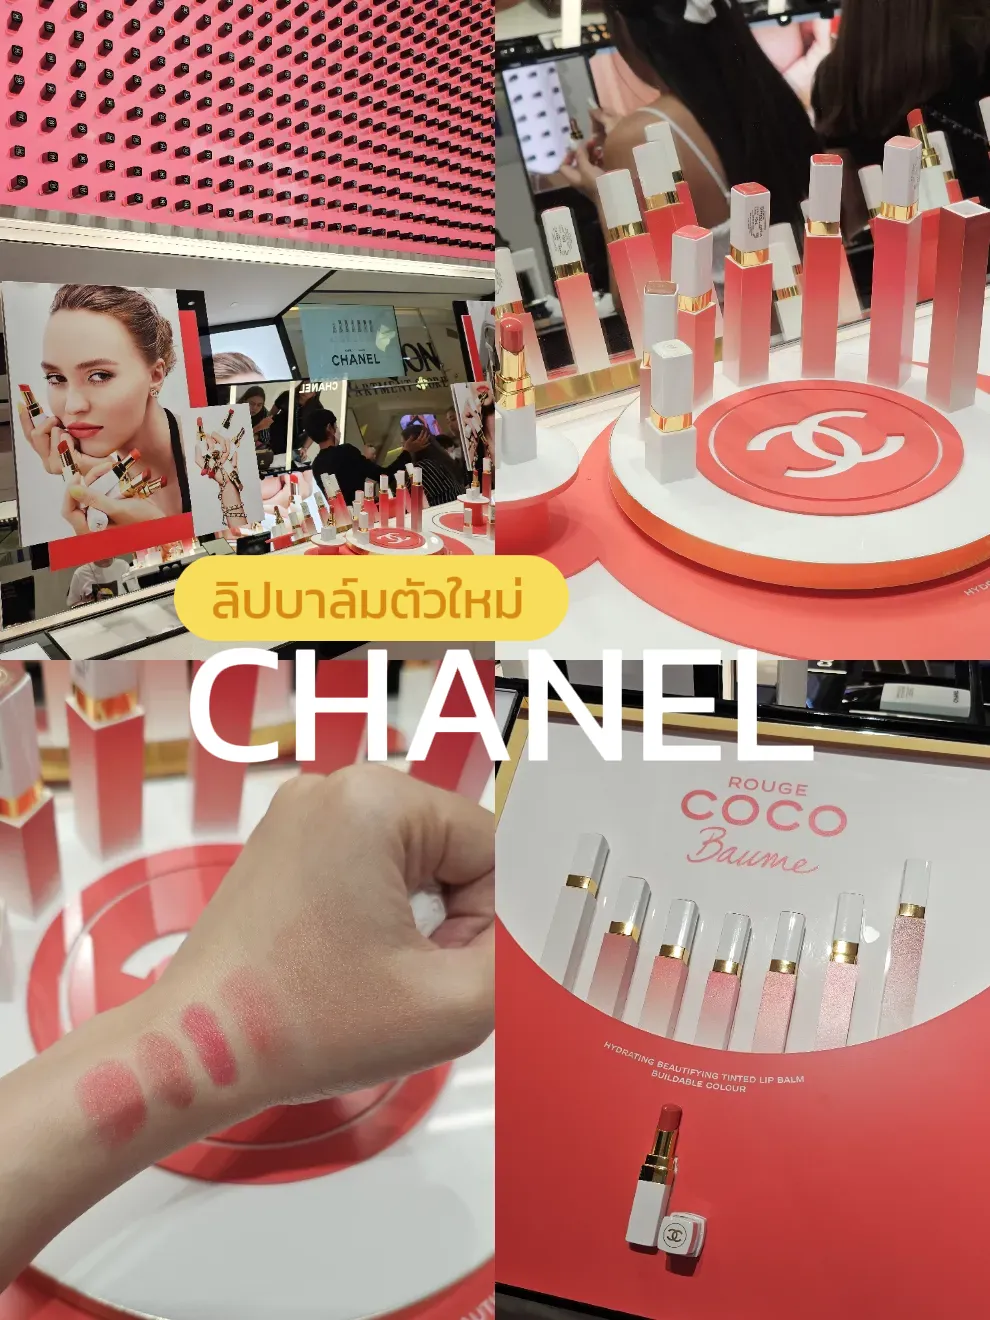 Chanel Lip Skin Care